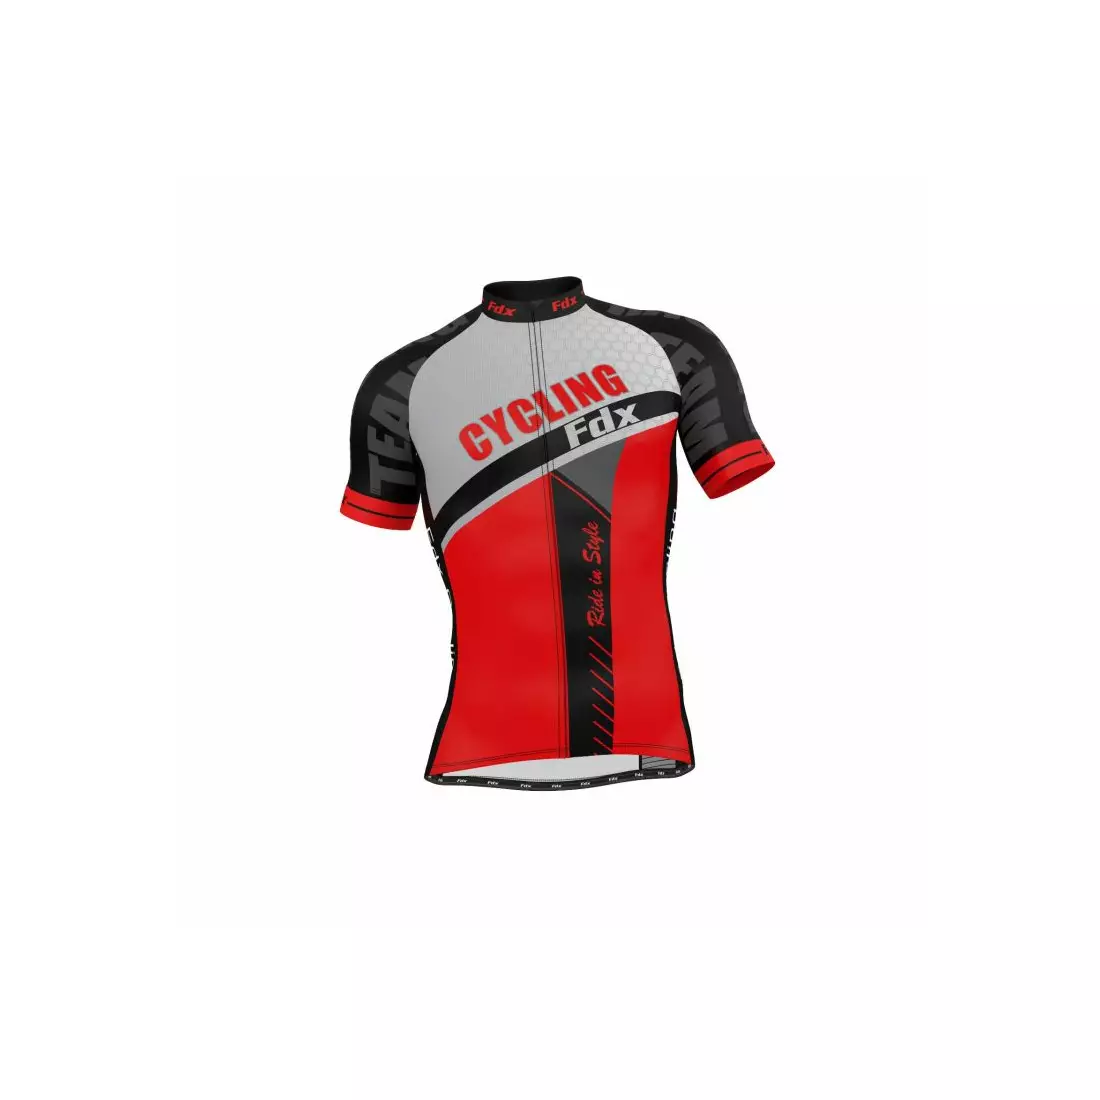 FDX 1070 pánsky cyklistický set dres + náprsenka s vložkou, červená